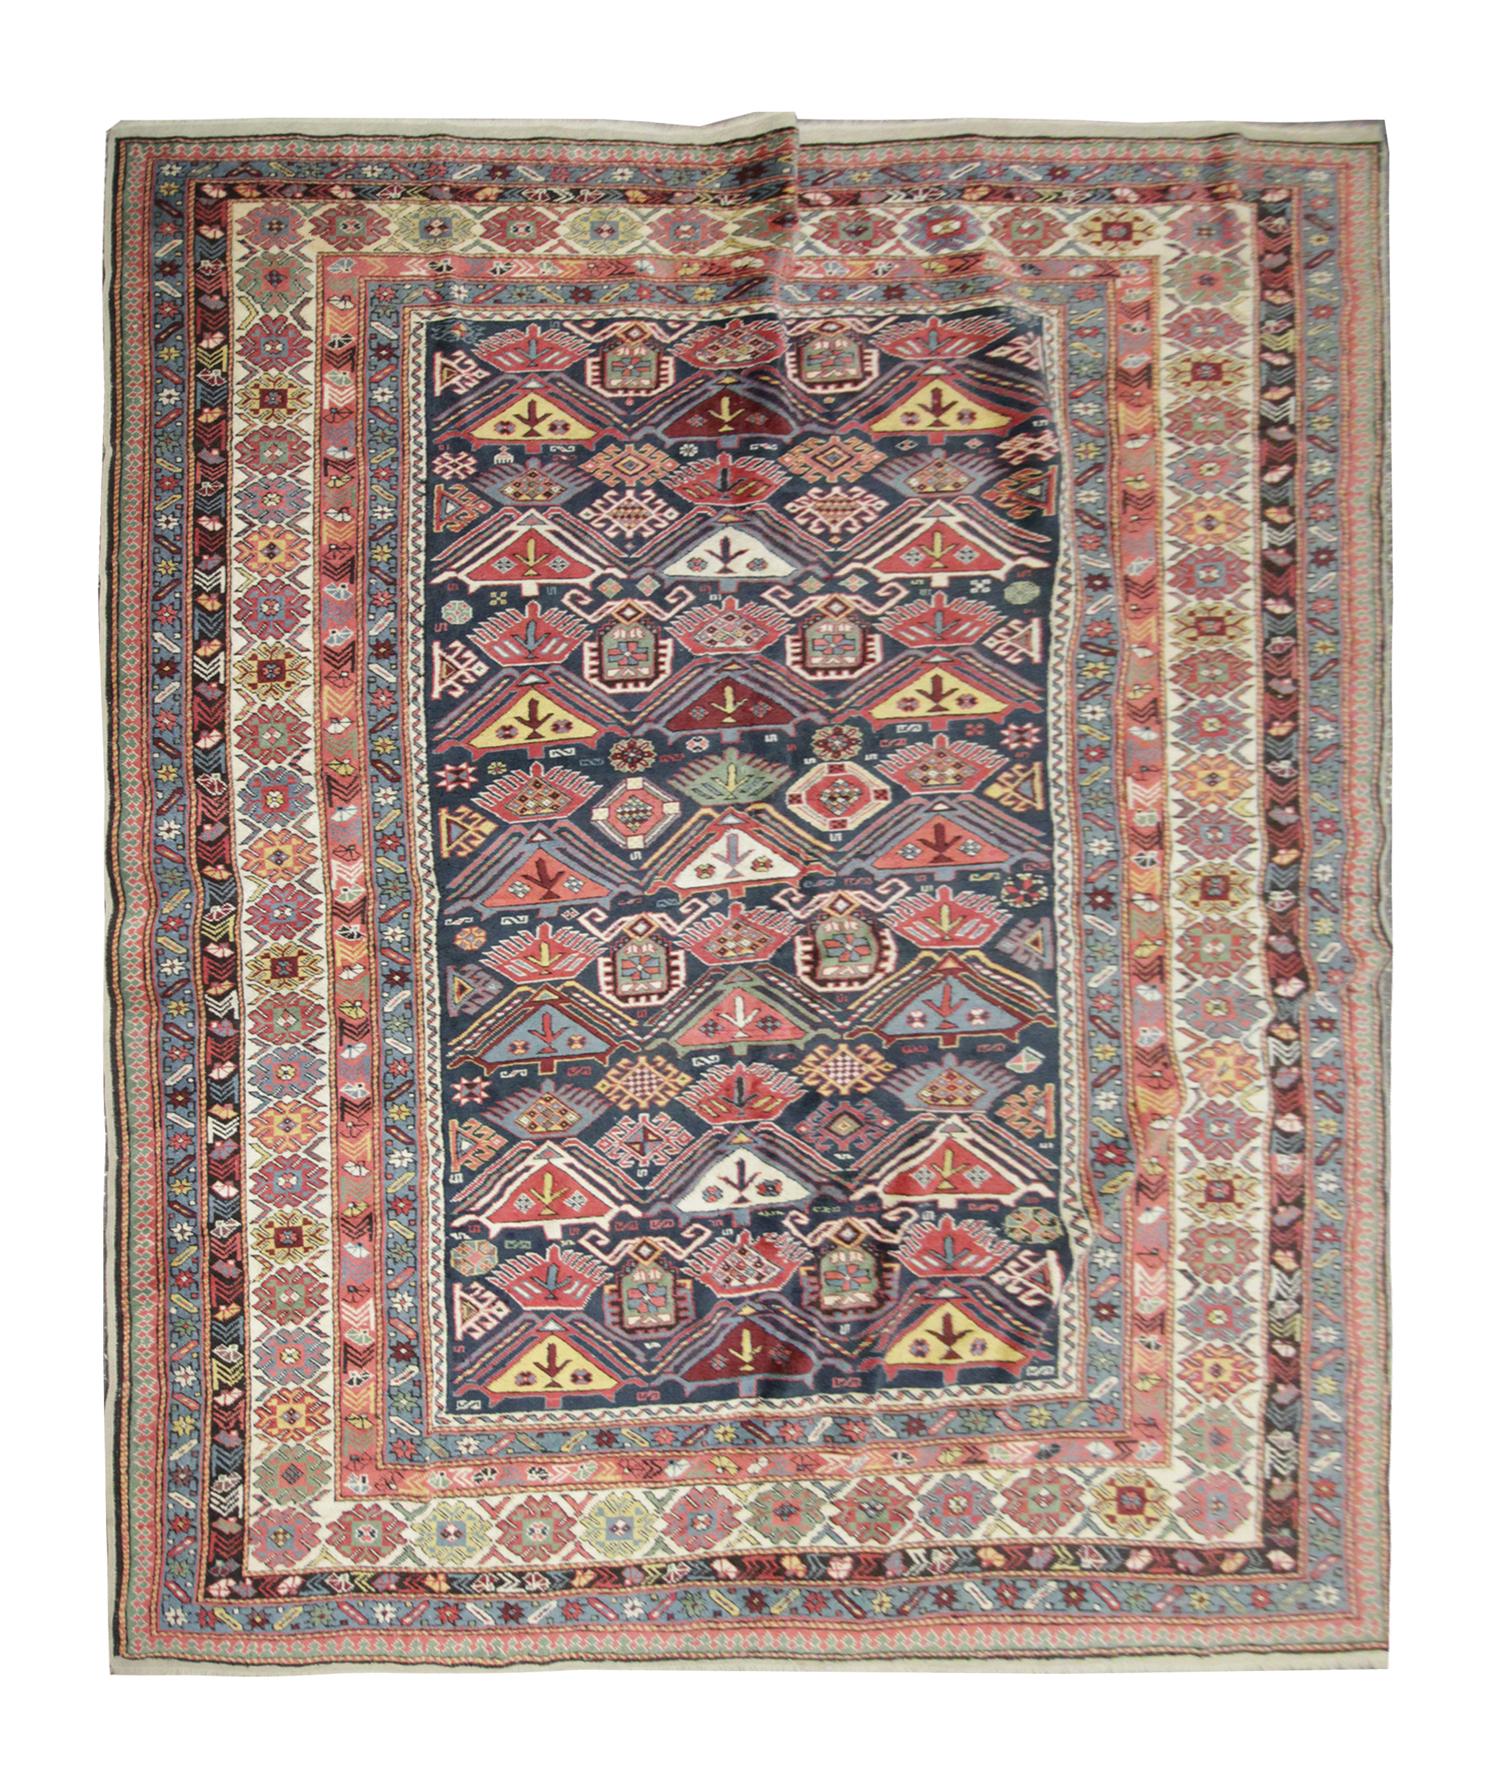 Dieser Orientteppich stammt aus Schirwan, Aserbaidschan. Er wurde von Hand aus handgesponnener Wolle gewebt und mit 100% biologischen Pflanzenfarben gefärbt. Mit einer mehrschichtigen Bordüre und einem symmetrischen Muster hebt sich dieser Teppich